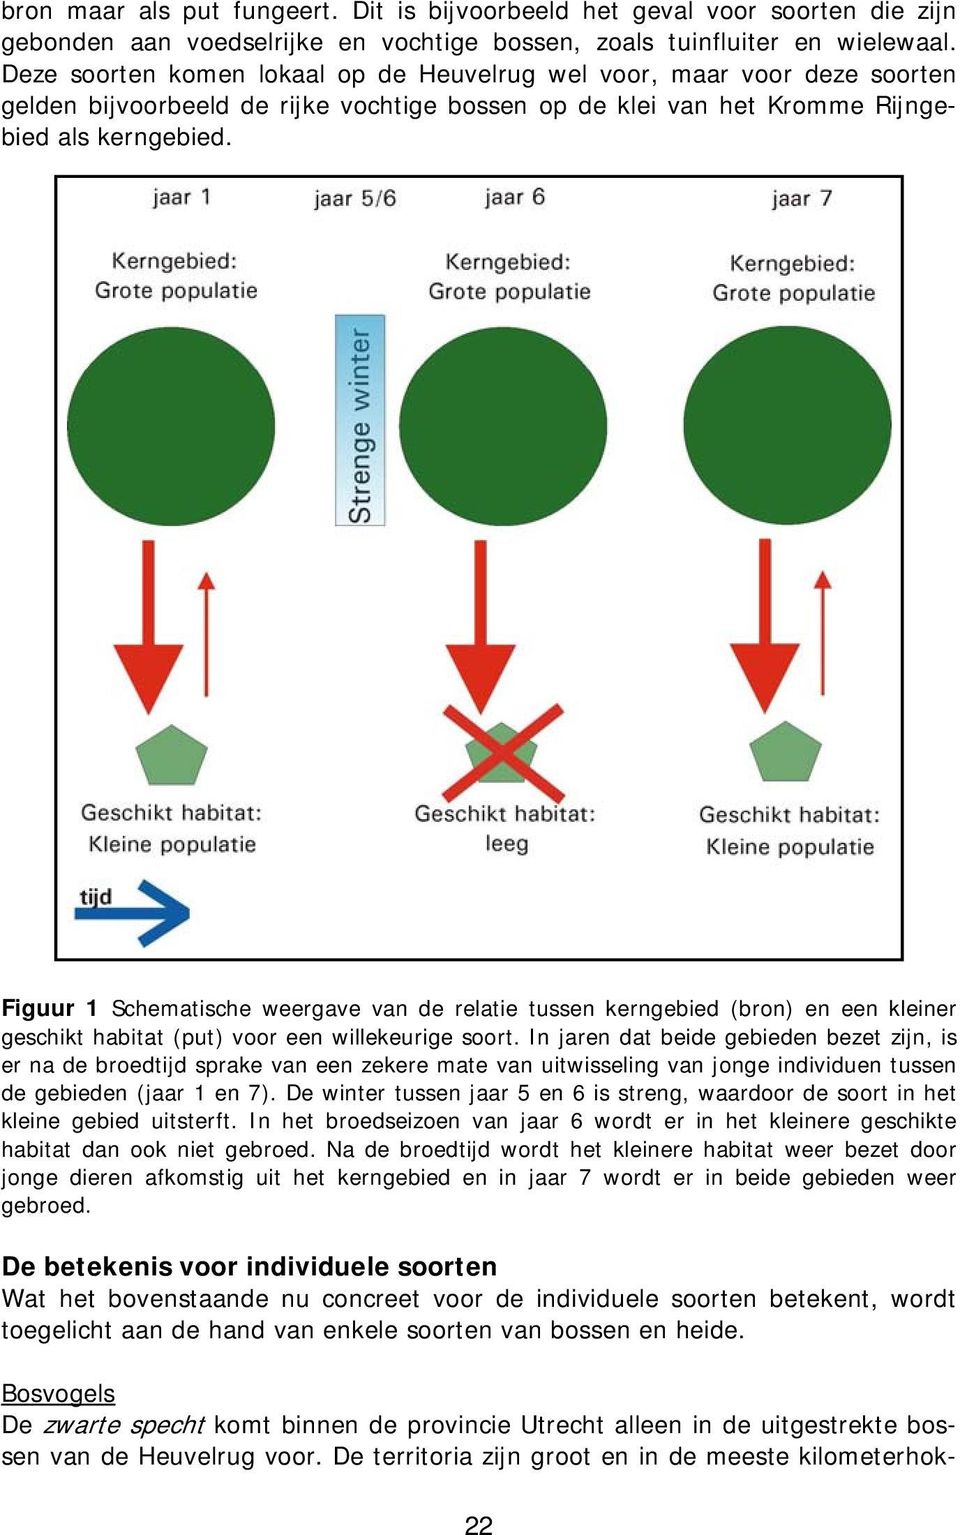 Figuur 1 Schematische weergave van de relatie tussen kerngebied (bron) en een kleiner geschikt habitat (put) voor een willekeurige soort.